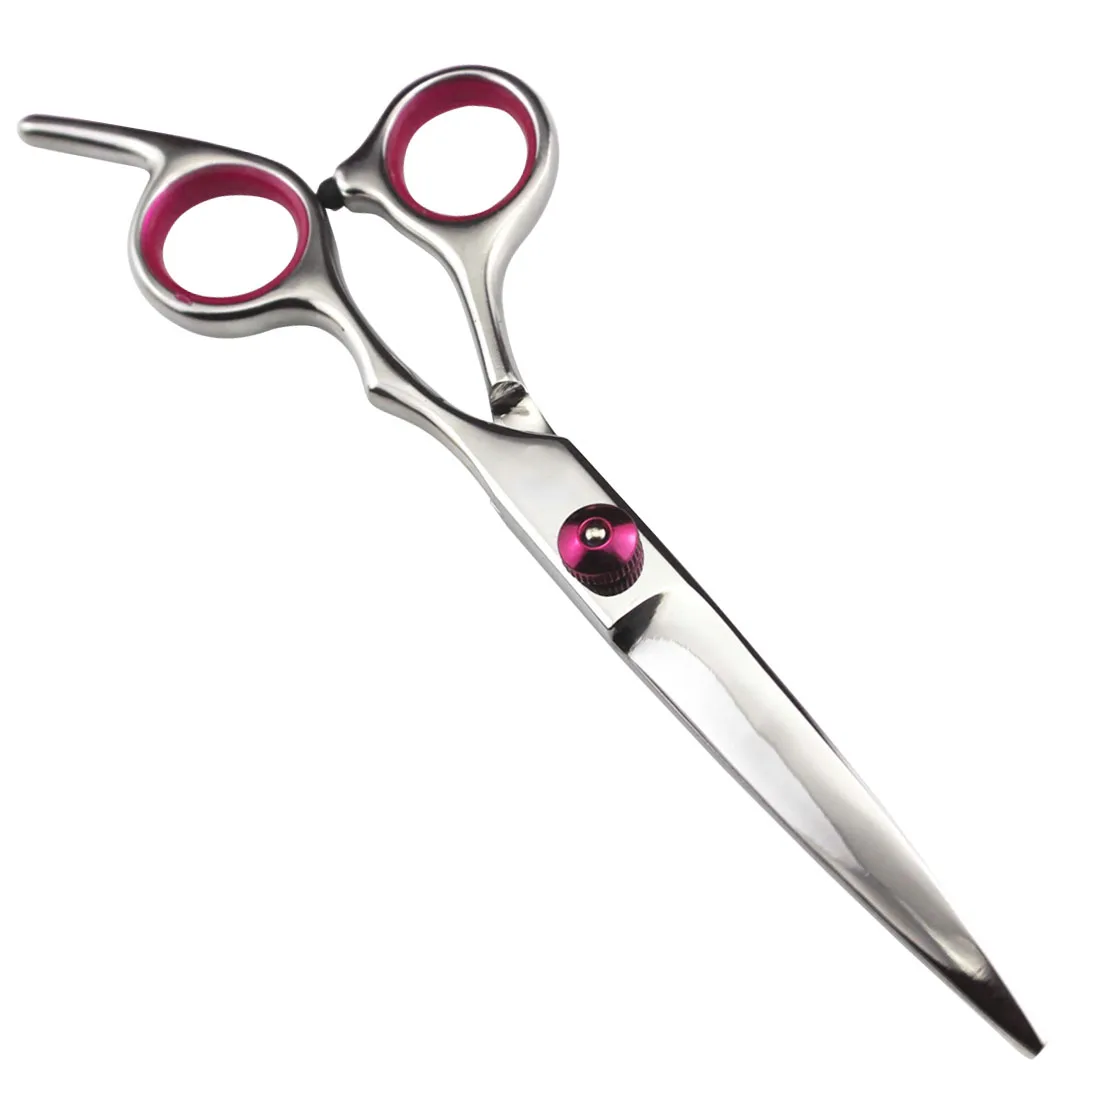 Стрижка истончение ножницы для салона Профессиональная парикмахерская резка тонкие инструменты для моделирования ножницы для волос парикмахерский набор Инструменты для укладки - Цвет: pink cutting